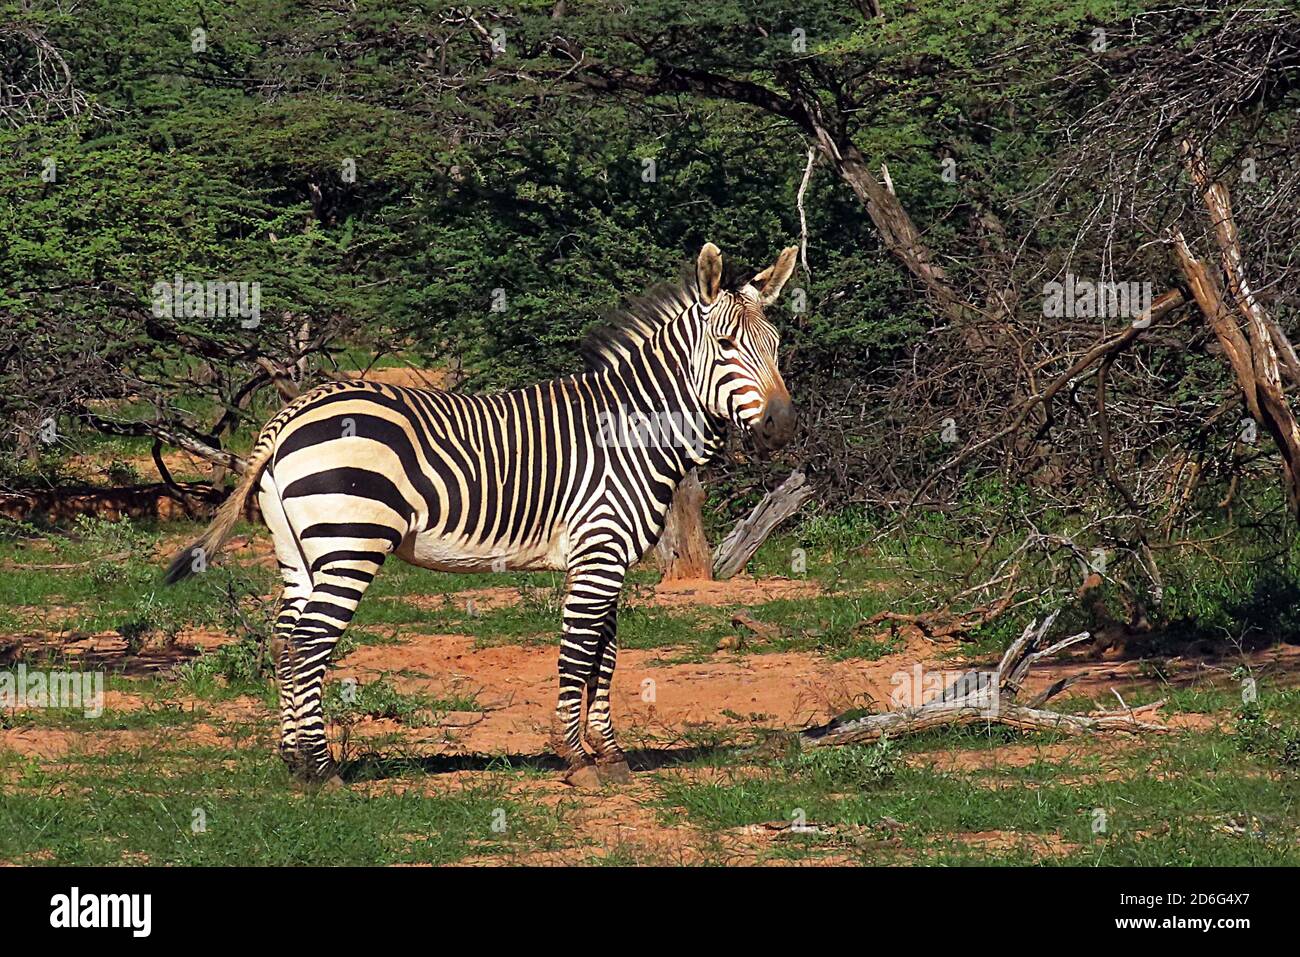 A Hartmann's Mountain Zebra (Equus zébra) regardant la caméra à la réserve d'Okonjima, région d'Otjozondjupa, Namibie. Banque D'Images